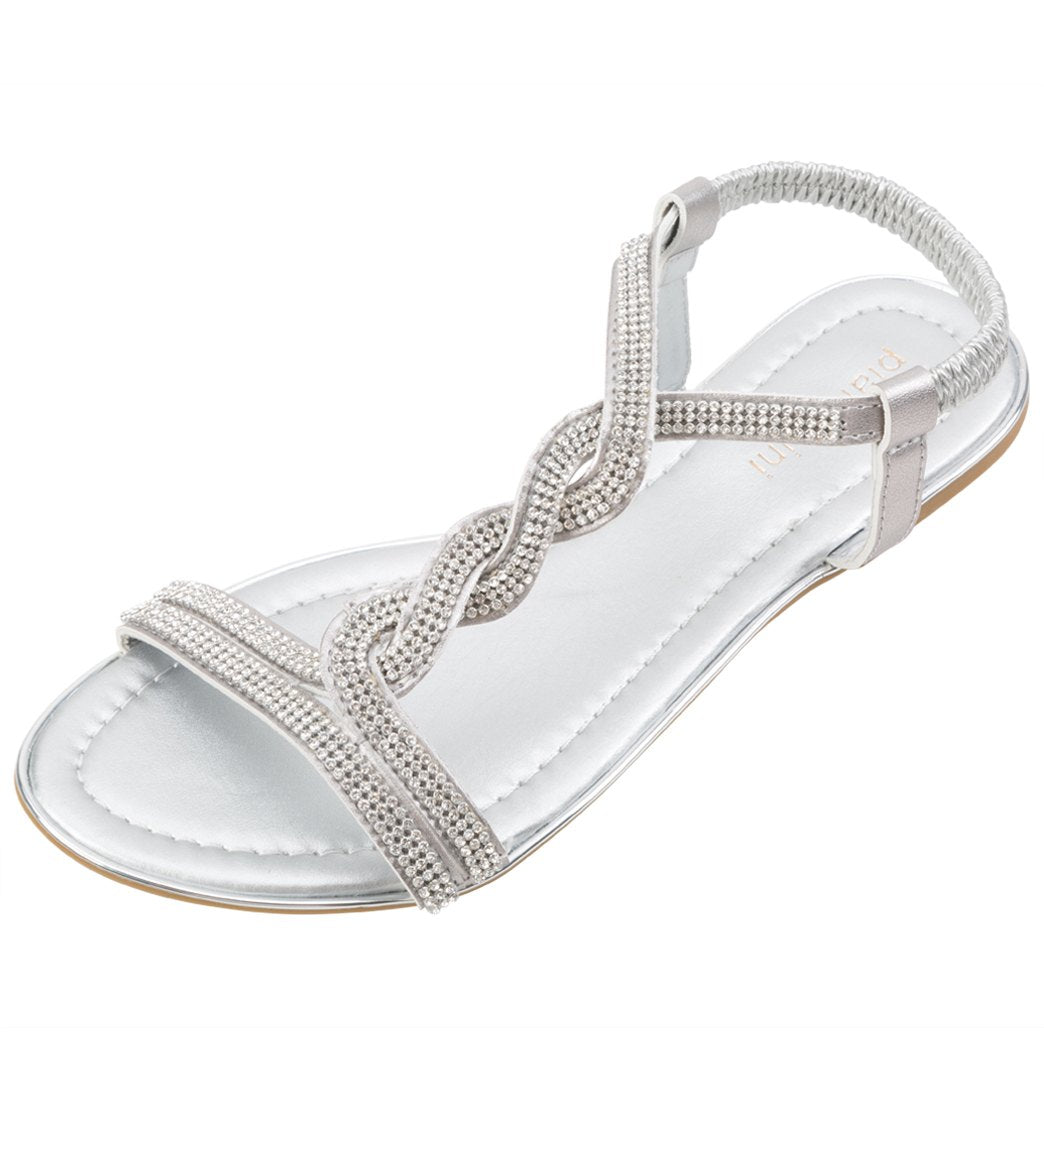 Pia Rossini Women's Nero Sandals - Silver 6.5 Eu 37 - Swimoutlet.com